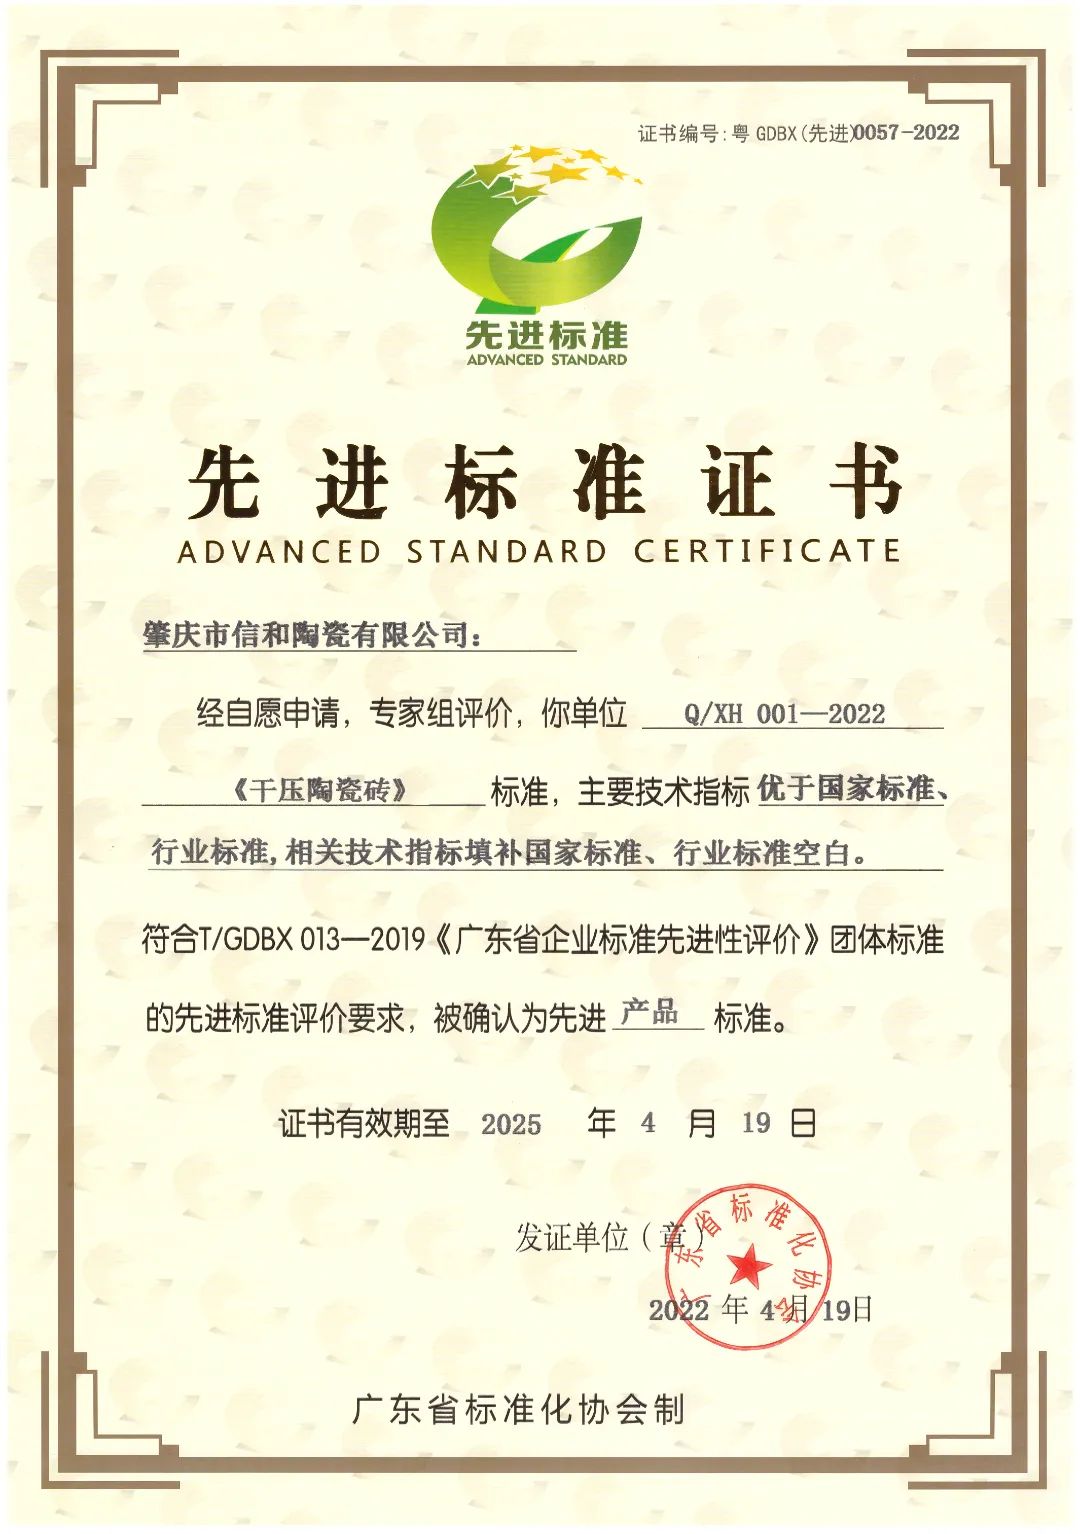 肇庆市信和陶瓷有限公司获“先进标准证书”